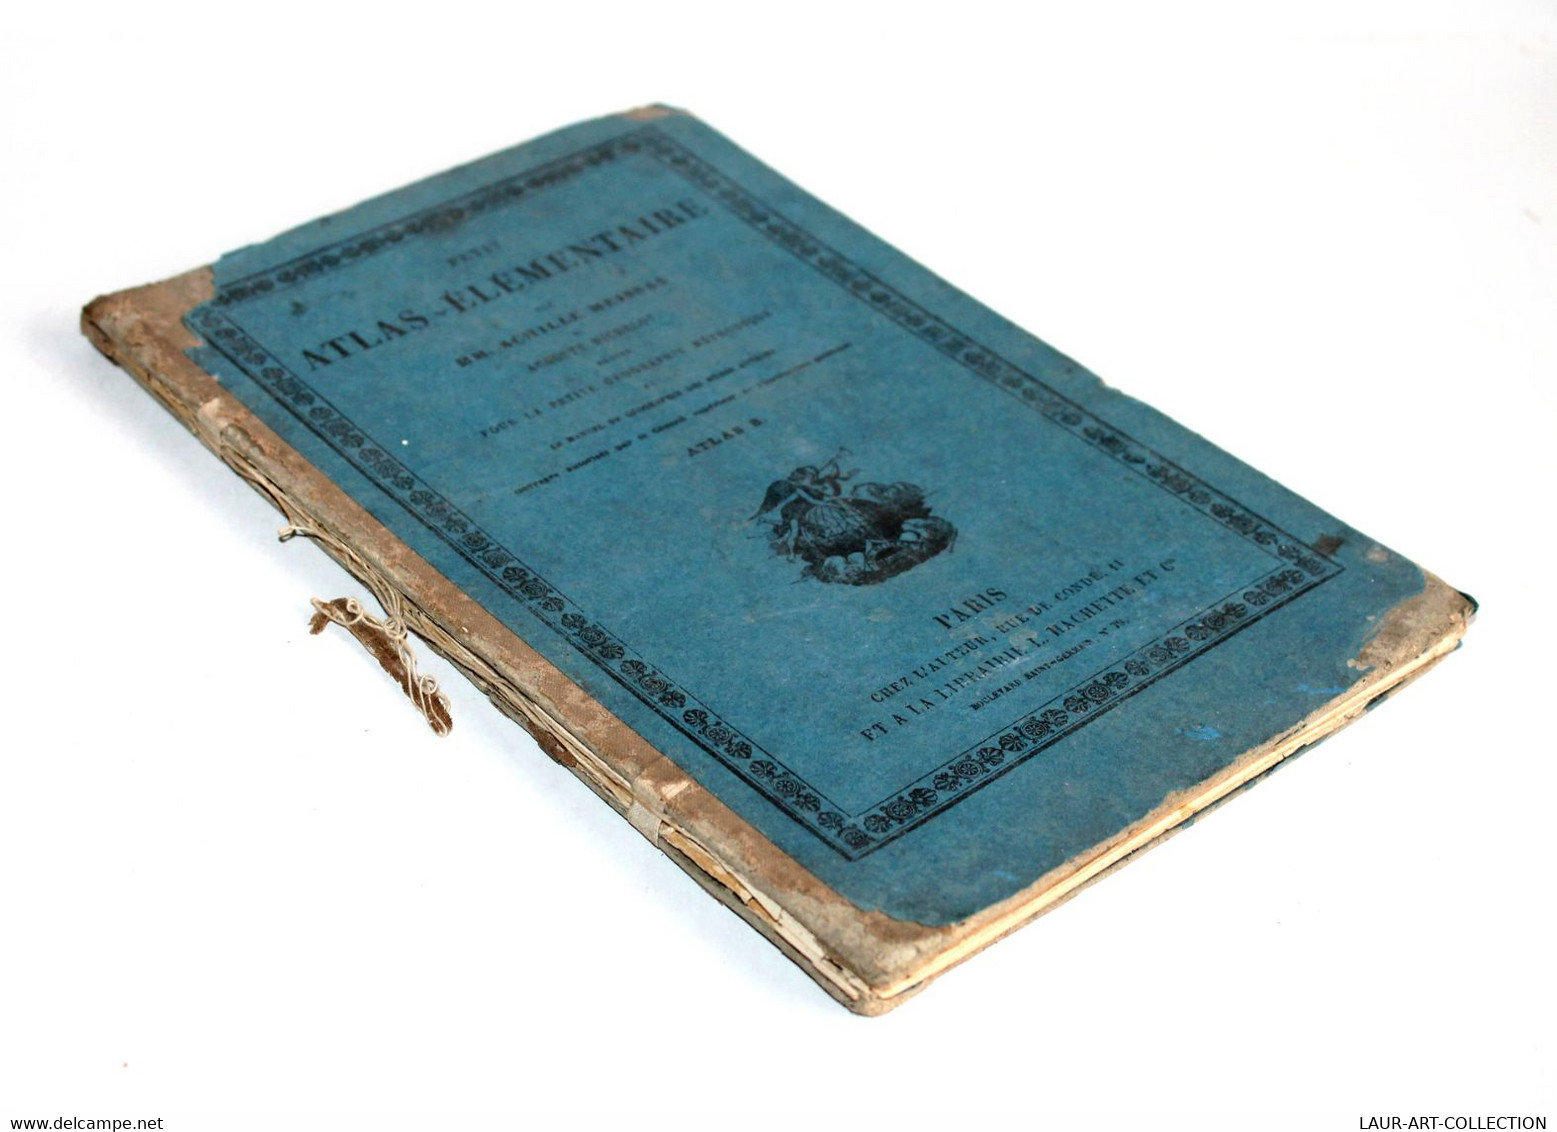 PETIT ATLAS ELEMENTAIRE De MEISSAS, MICHELOT GEOGRAPHIE METHODIQUE 1874 HACHETTE / ANCIEN LIVRE DE COLLECTION (2301.455) - Karten/Atlanten